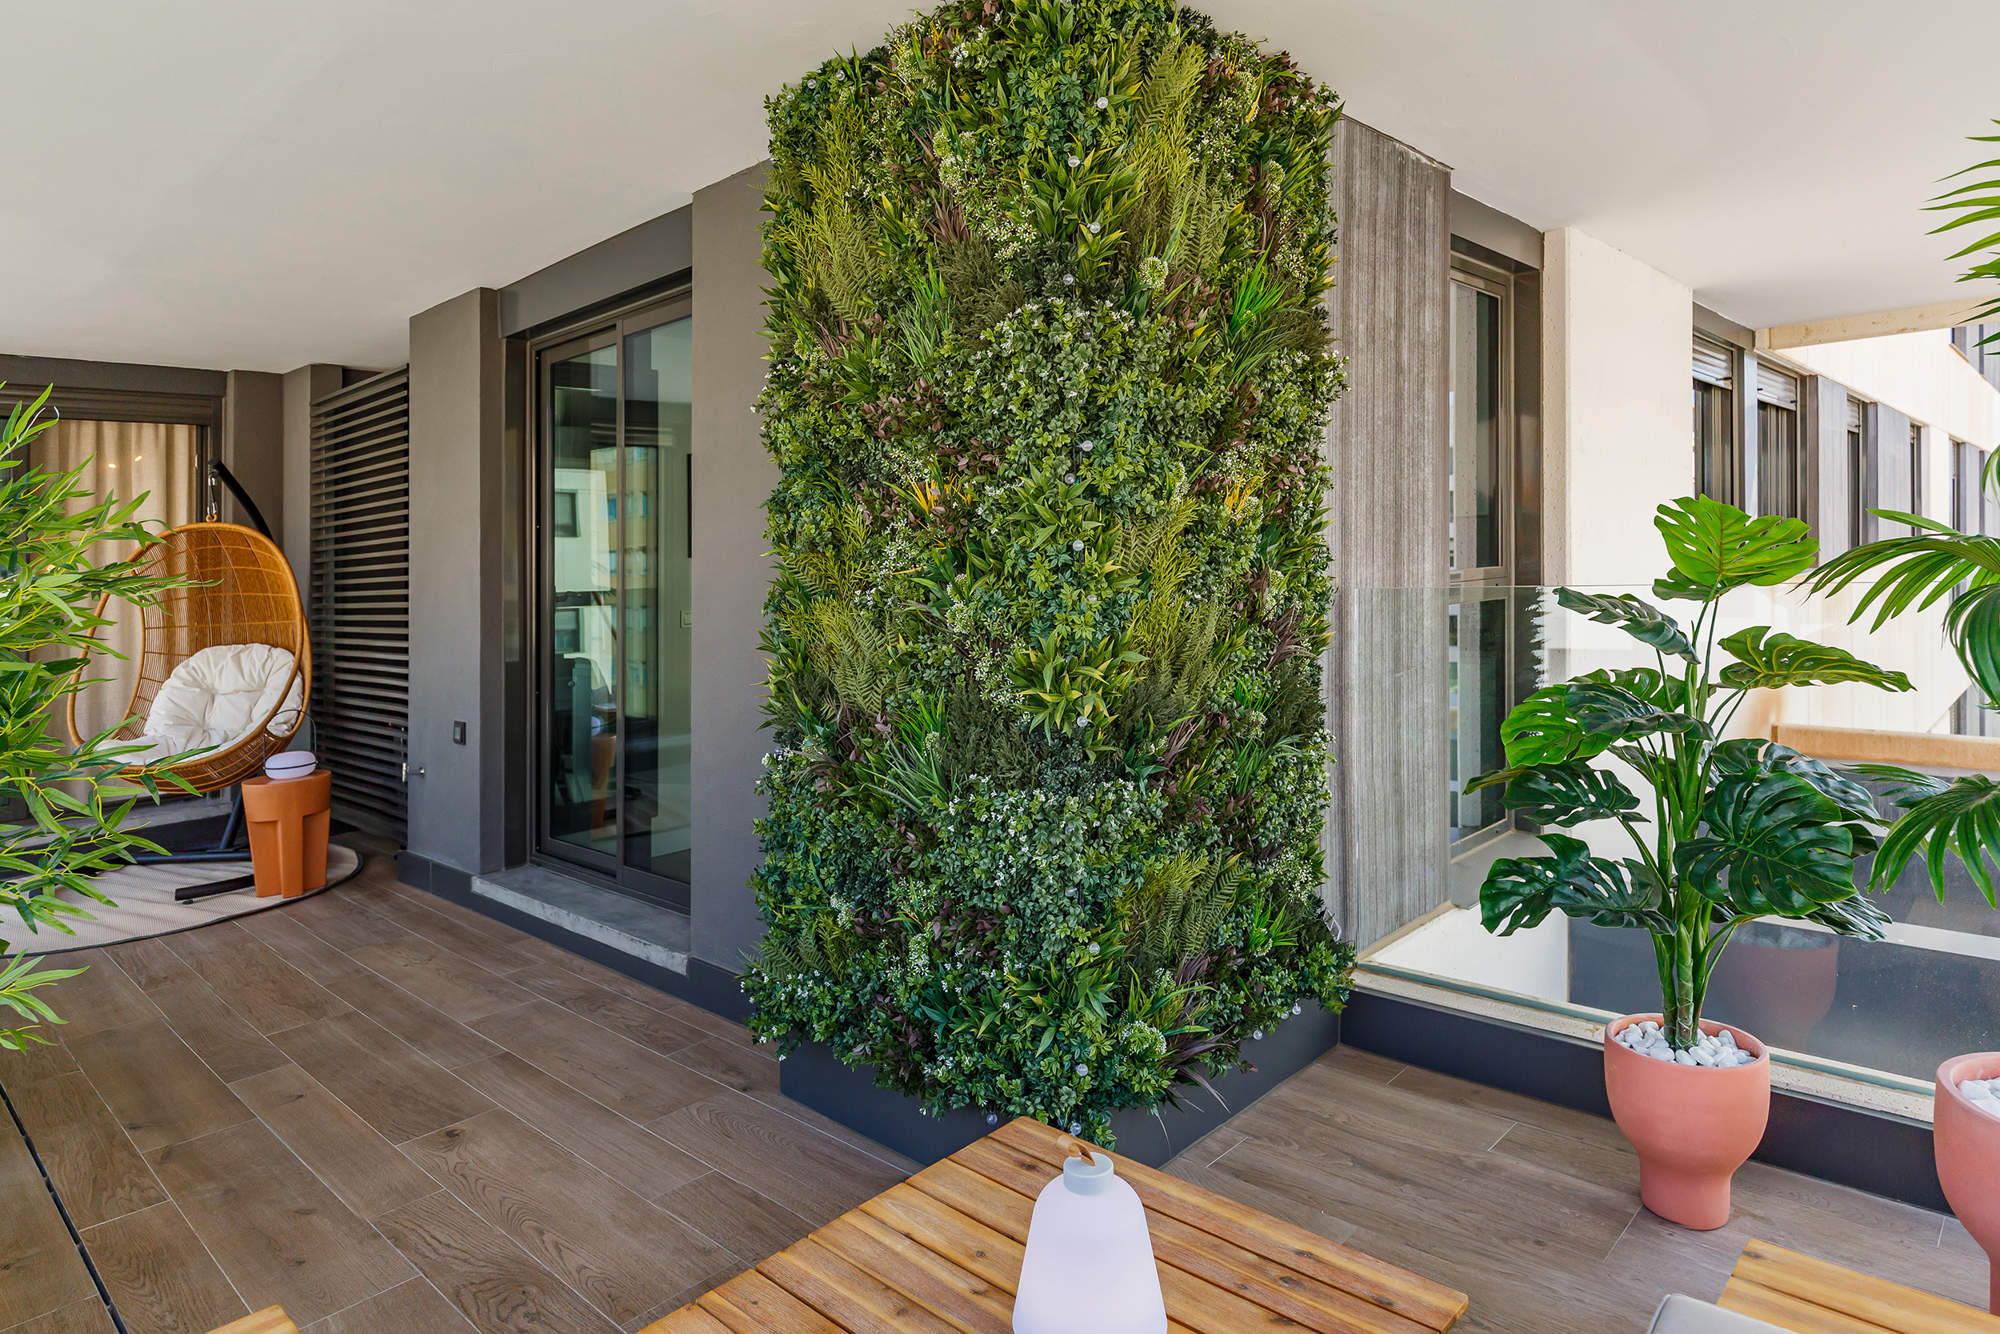 Terraza decorada con plantas, un jardín vertical y un columpio de fibras